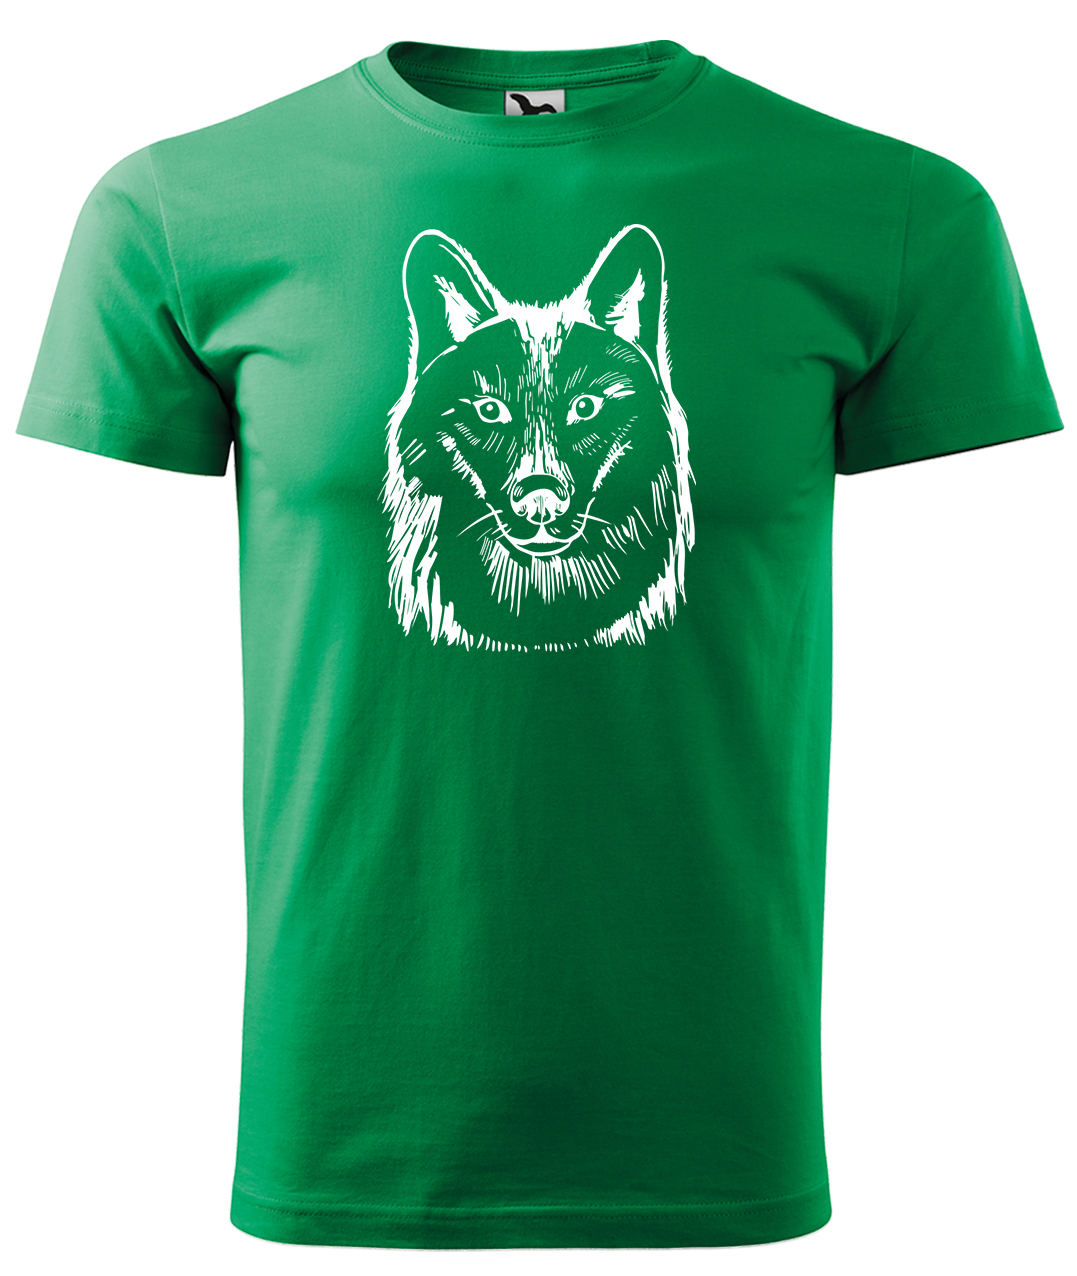 Dětské tričko s vlkem - Kresba vlka Velikost: 10 let / 146 cm, Barva: Středně zelená (16), Délka rukávu: Krátký rukáv